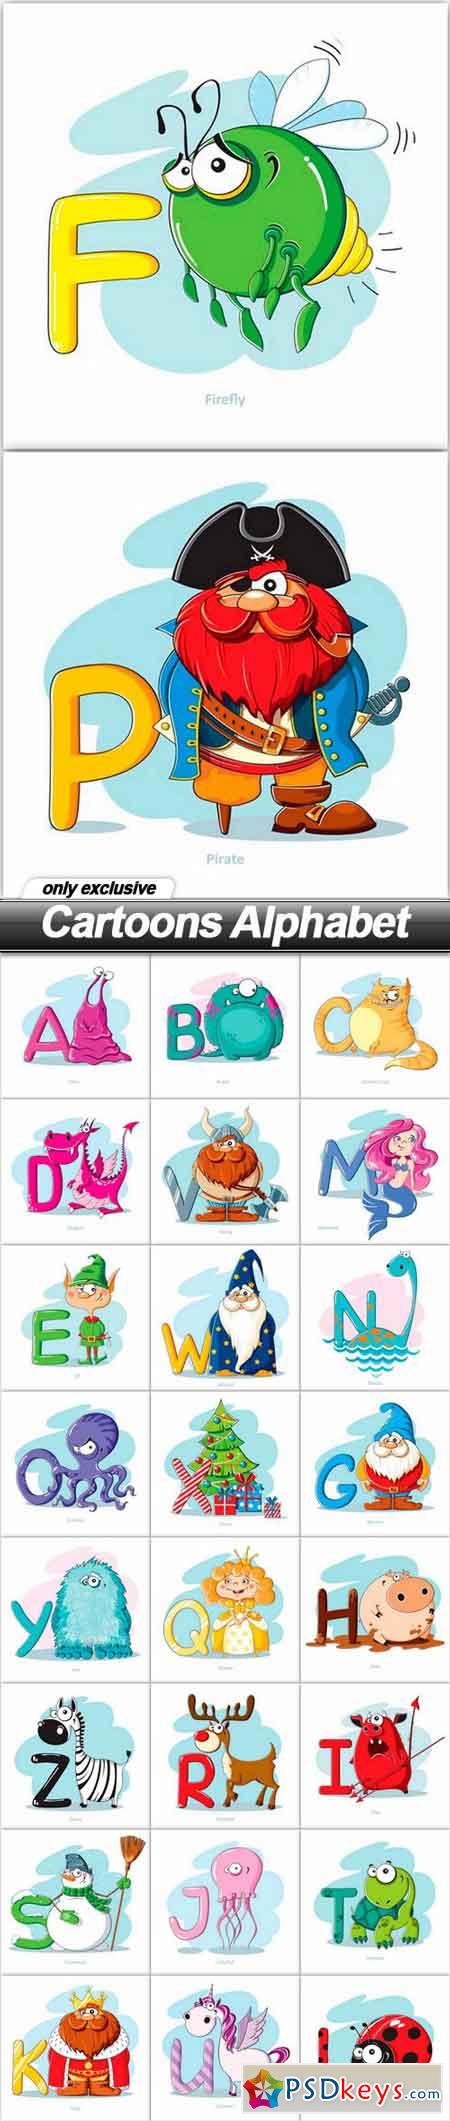 Cartoons Alphabet - 26 EPS